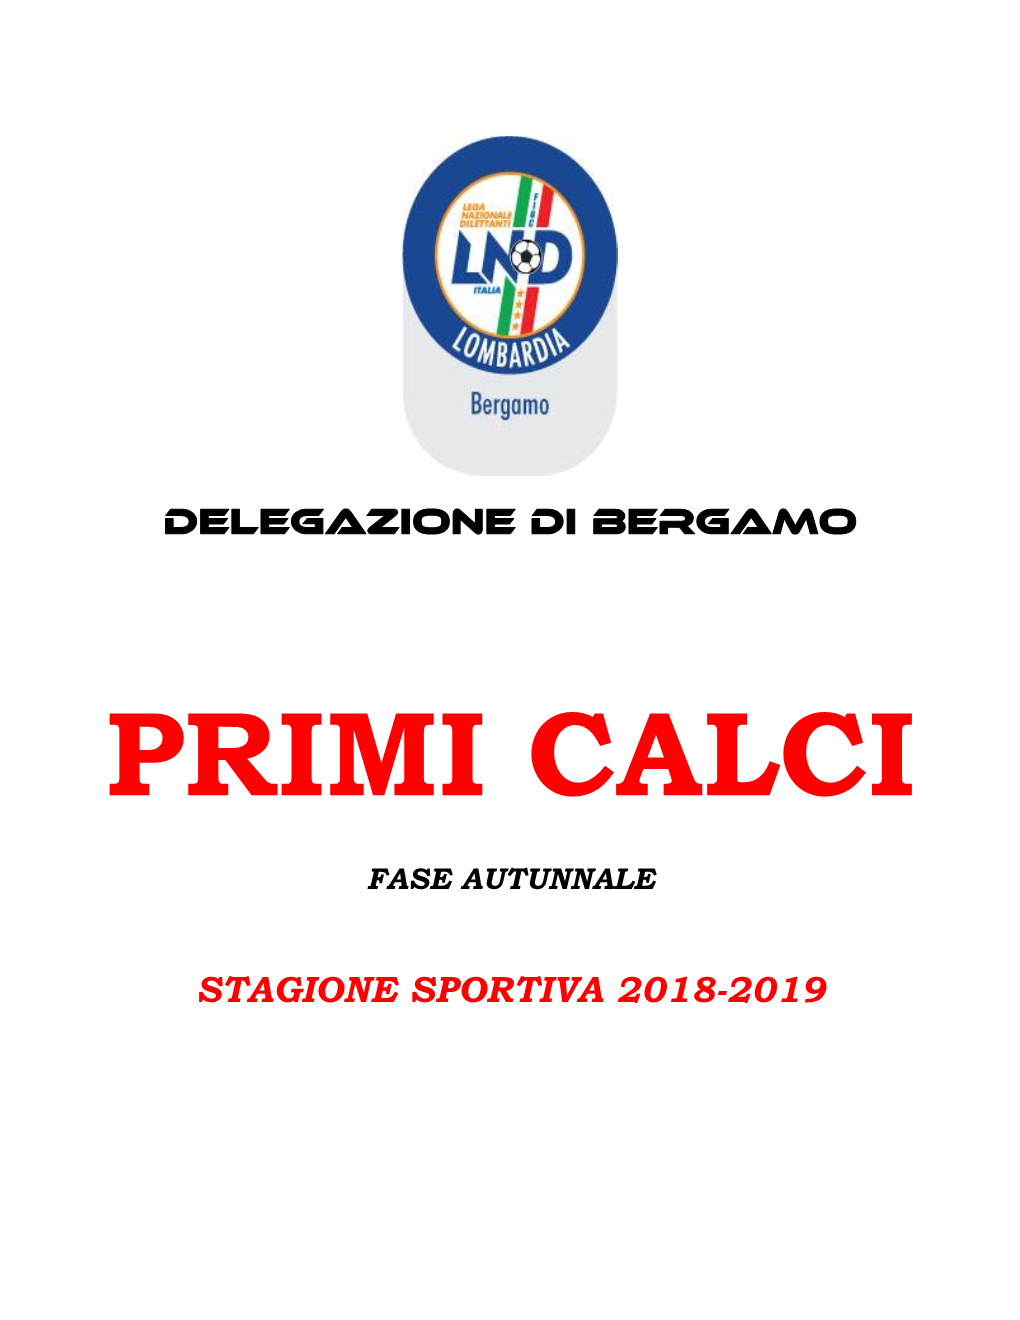 Delegazione Di Bergamo Stagione Sportiva 2018-2019